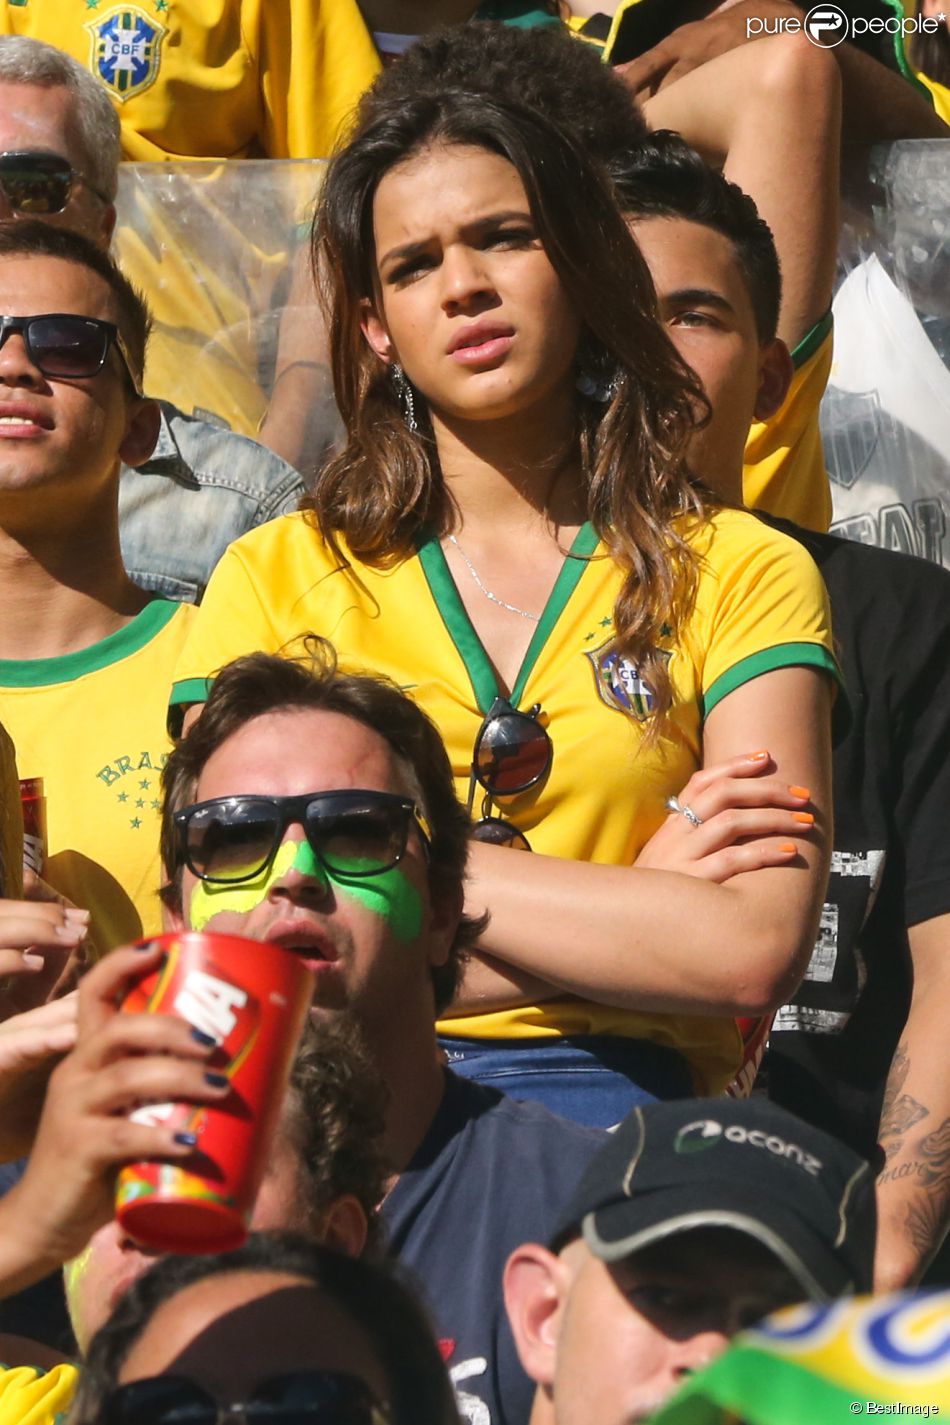  Bruna Marquezine, petite amie de Neymar, assiste au match Br&amp;eacute;sil contre Chili &amp;agrave; Belo Horizonte city, le 28 juin 2014 